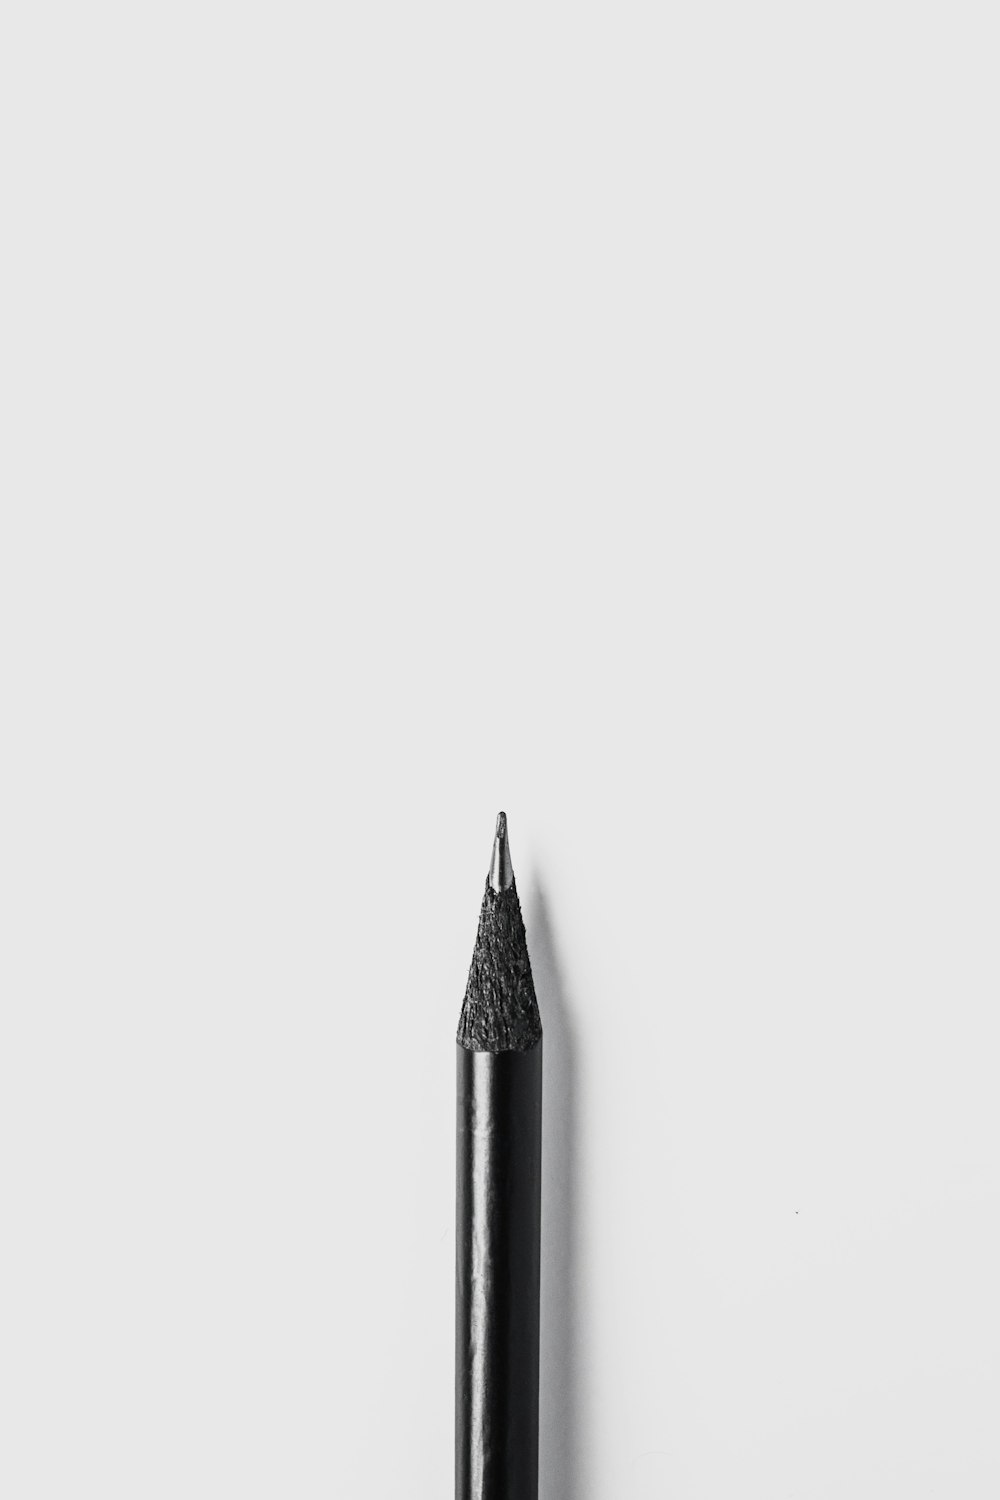 crayon noir sur surface blanche